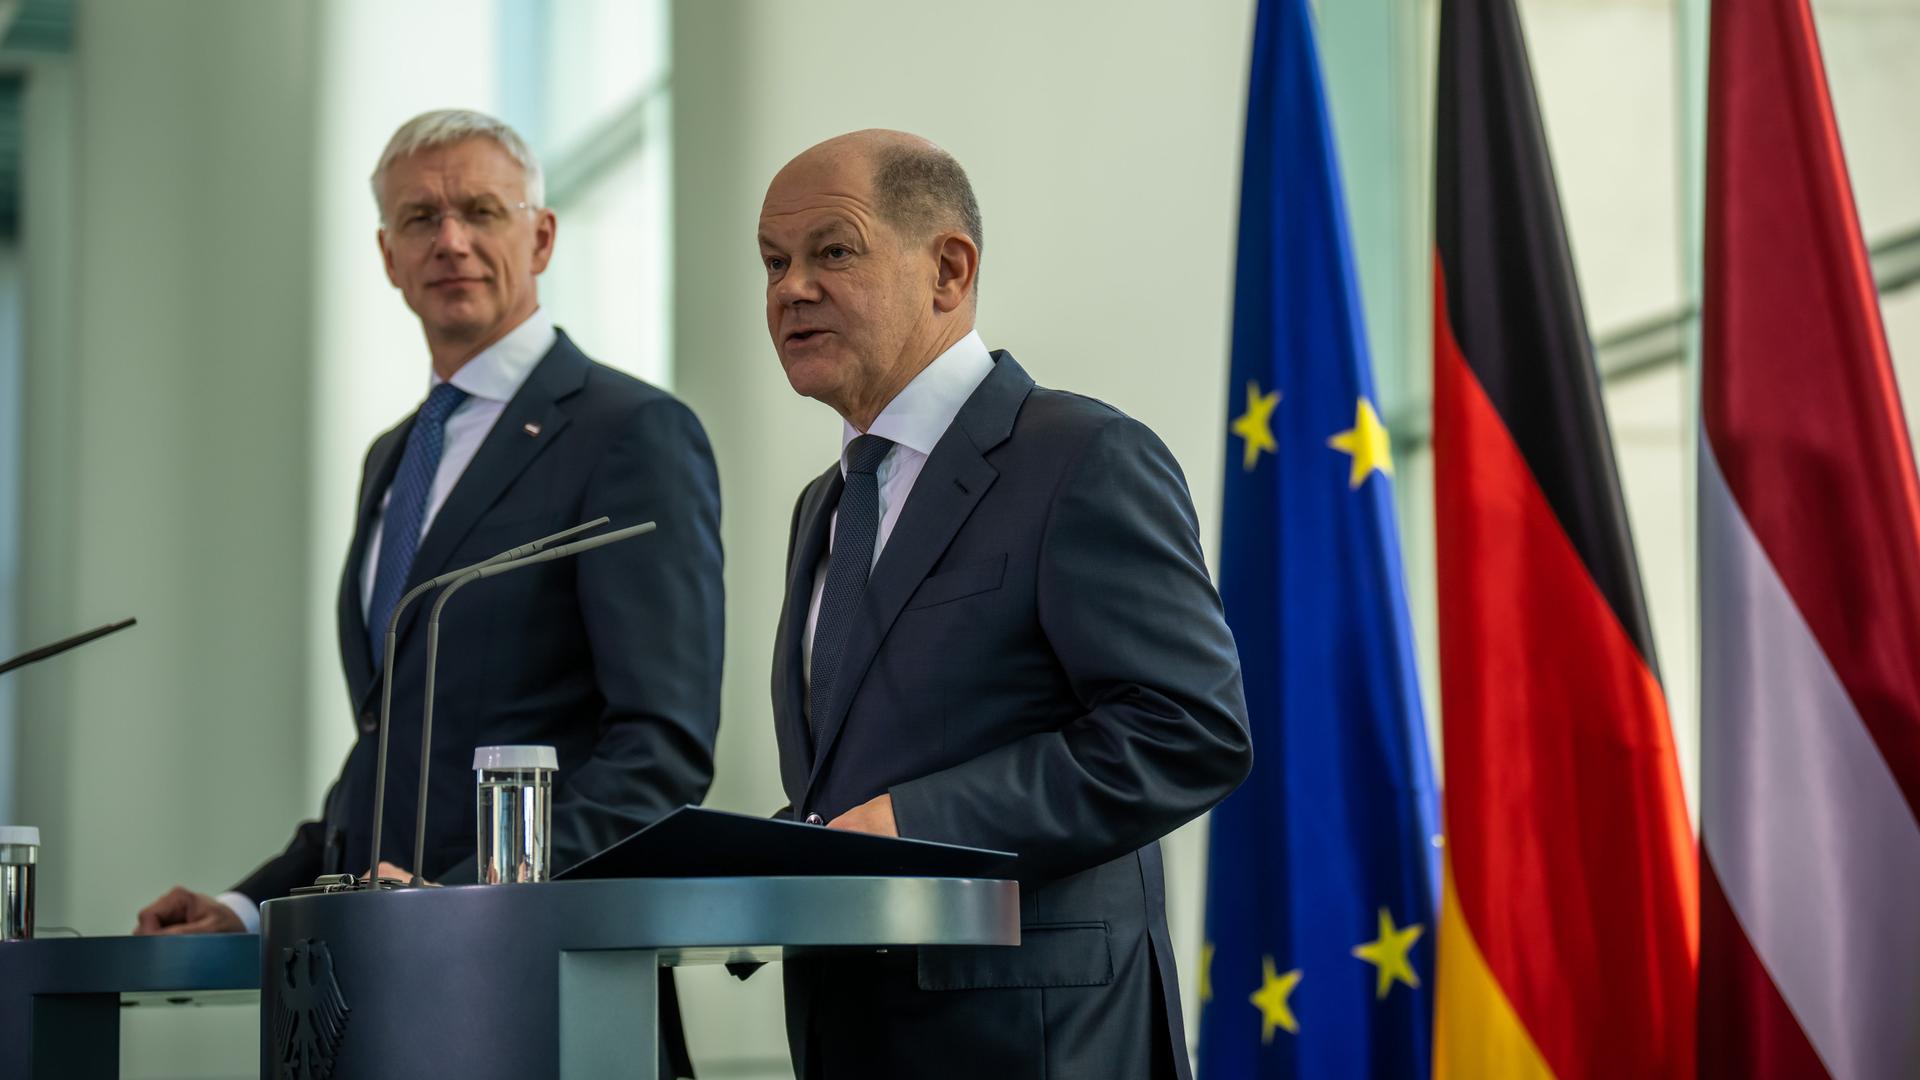 Bundeskanzler Olaf Scholz (SPD, r) nimmt neben Krisjanis Karins, Ministerpräsident aus Lettland, an einer Pressekonferenz teil.